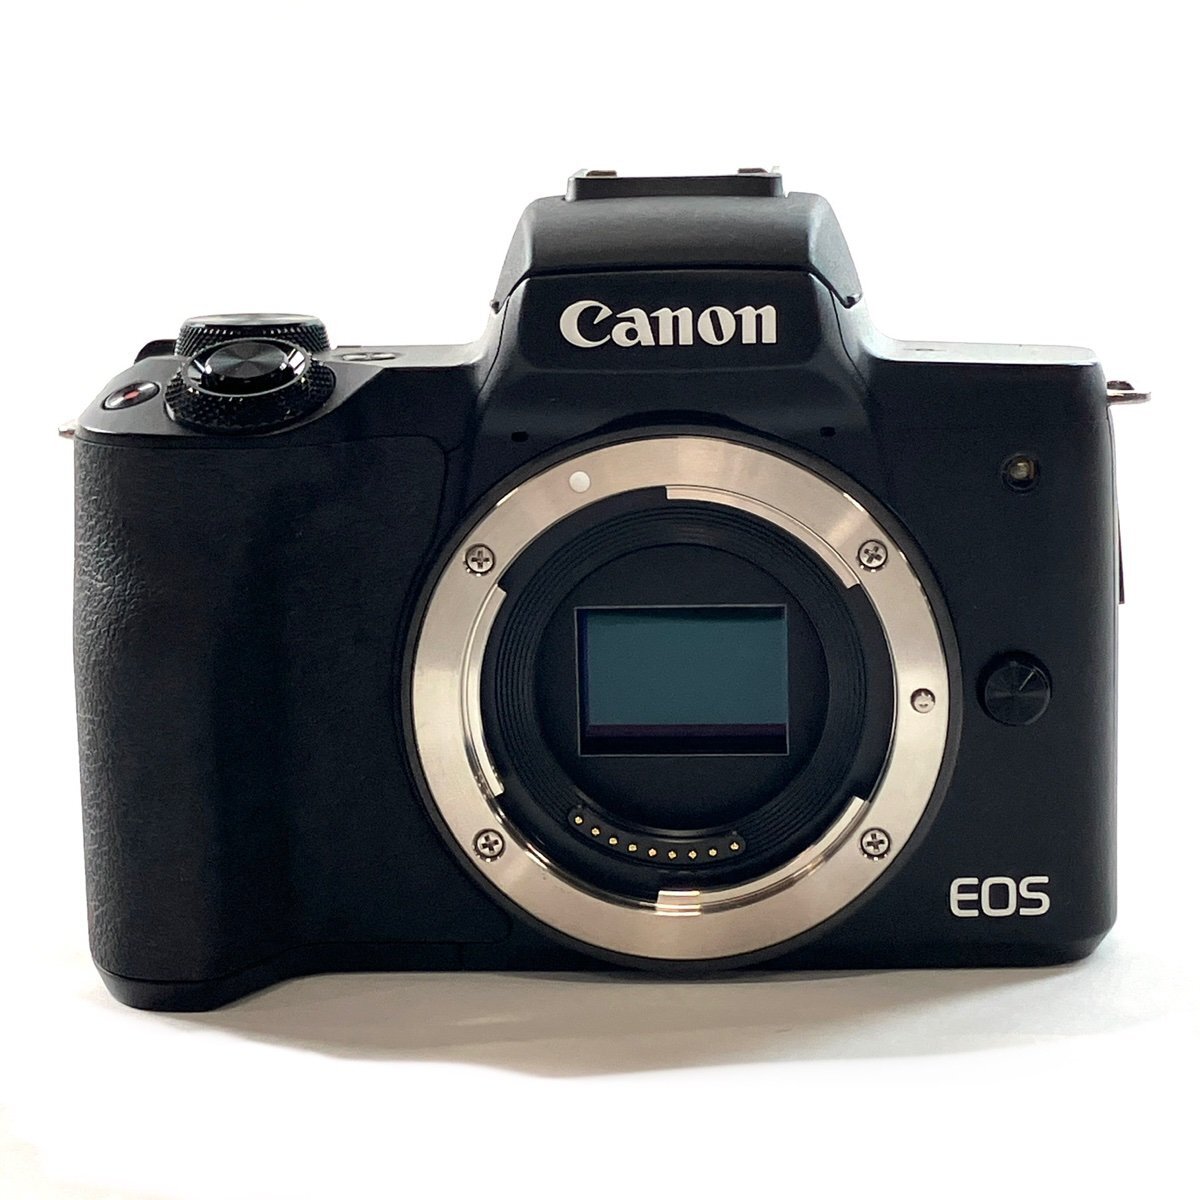 キヤノン Canon EOS Kiss M2 ボディ デジタル ミラーレス 一眼カメラ 【中古】